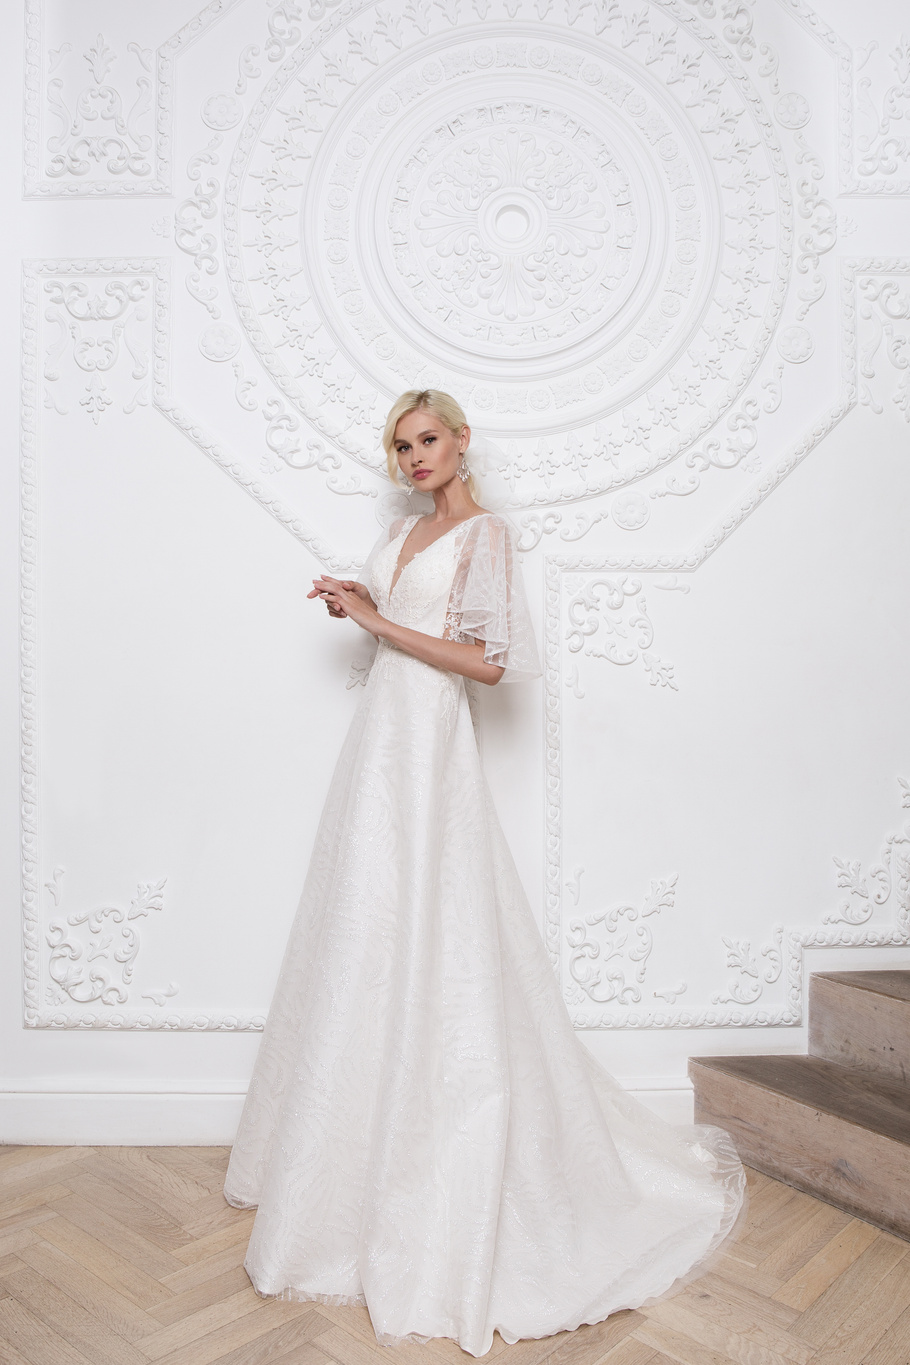 Купить свадебное платье «Клэр» Мэрри Марк из коллекции 2020 года в Ярославле